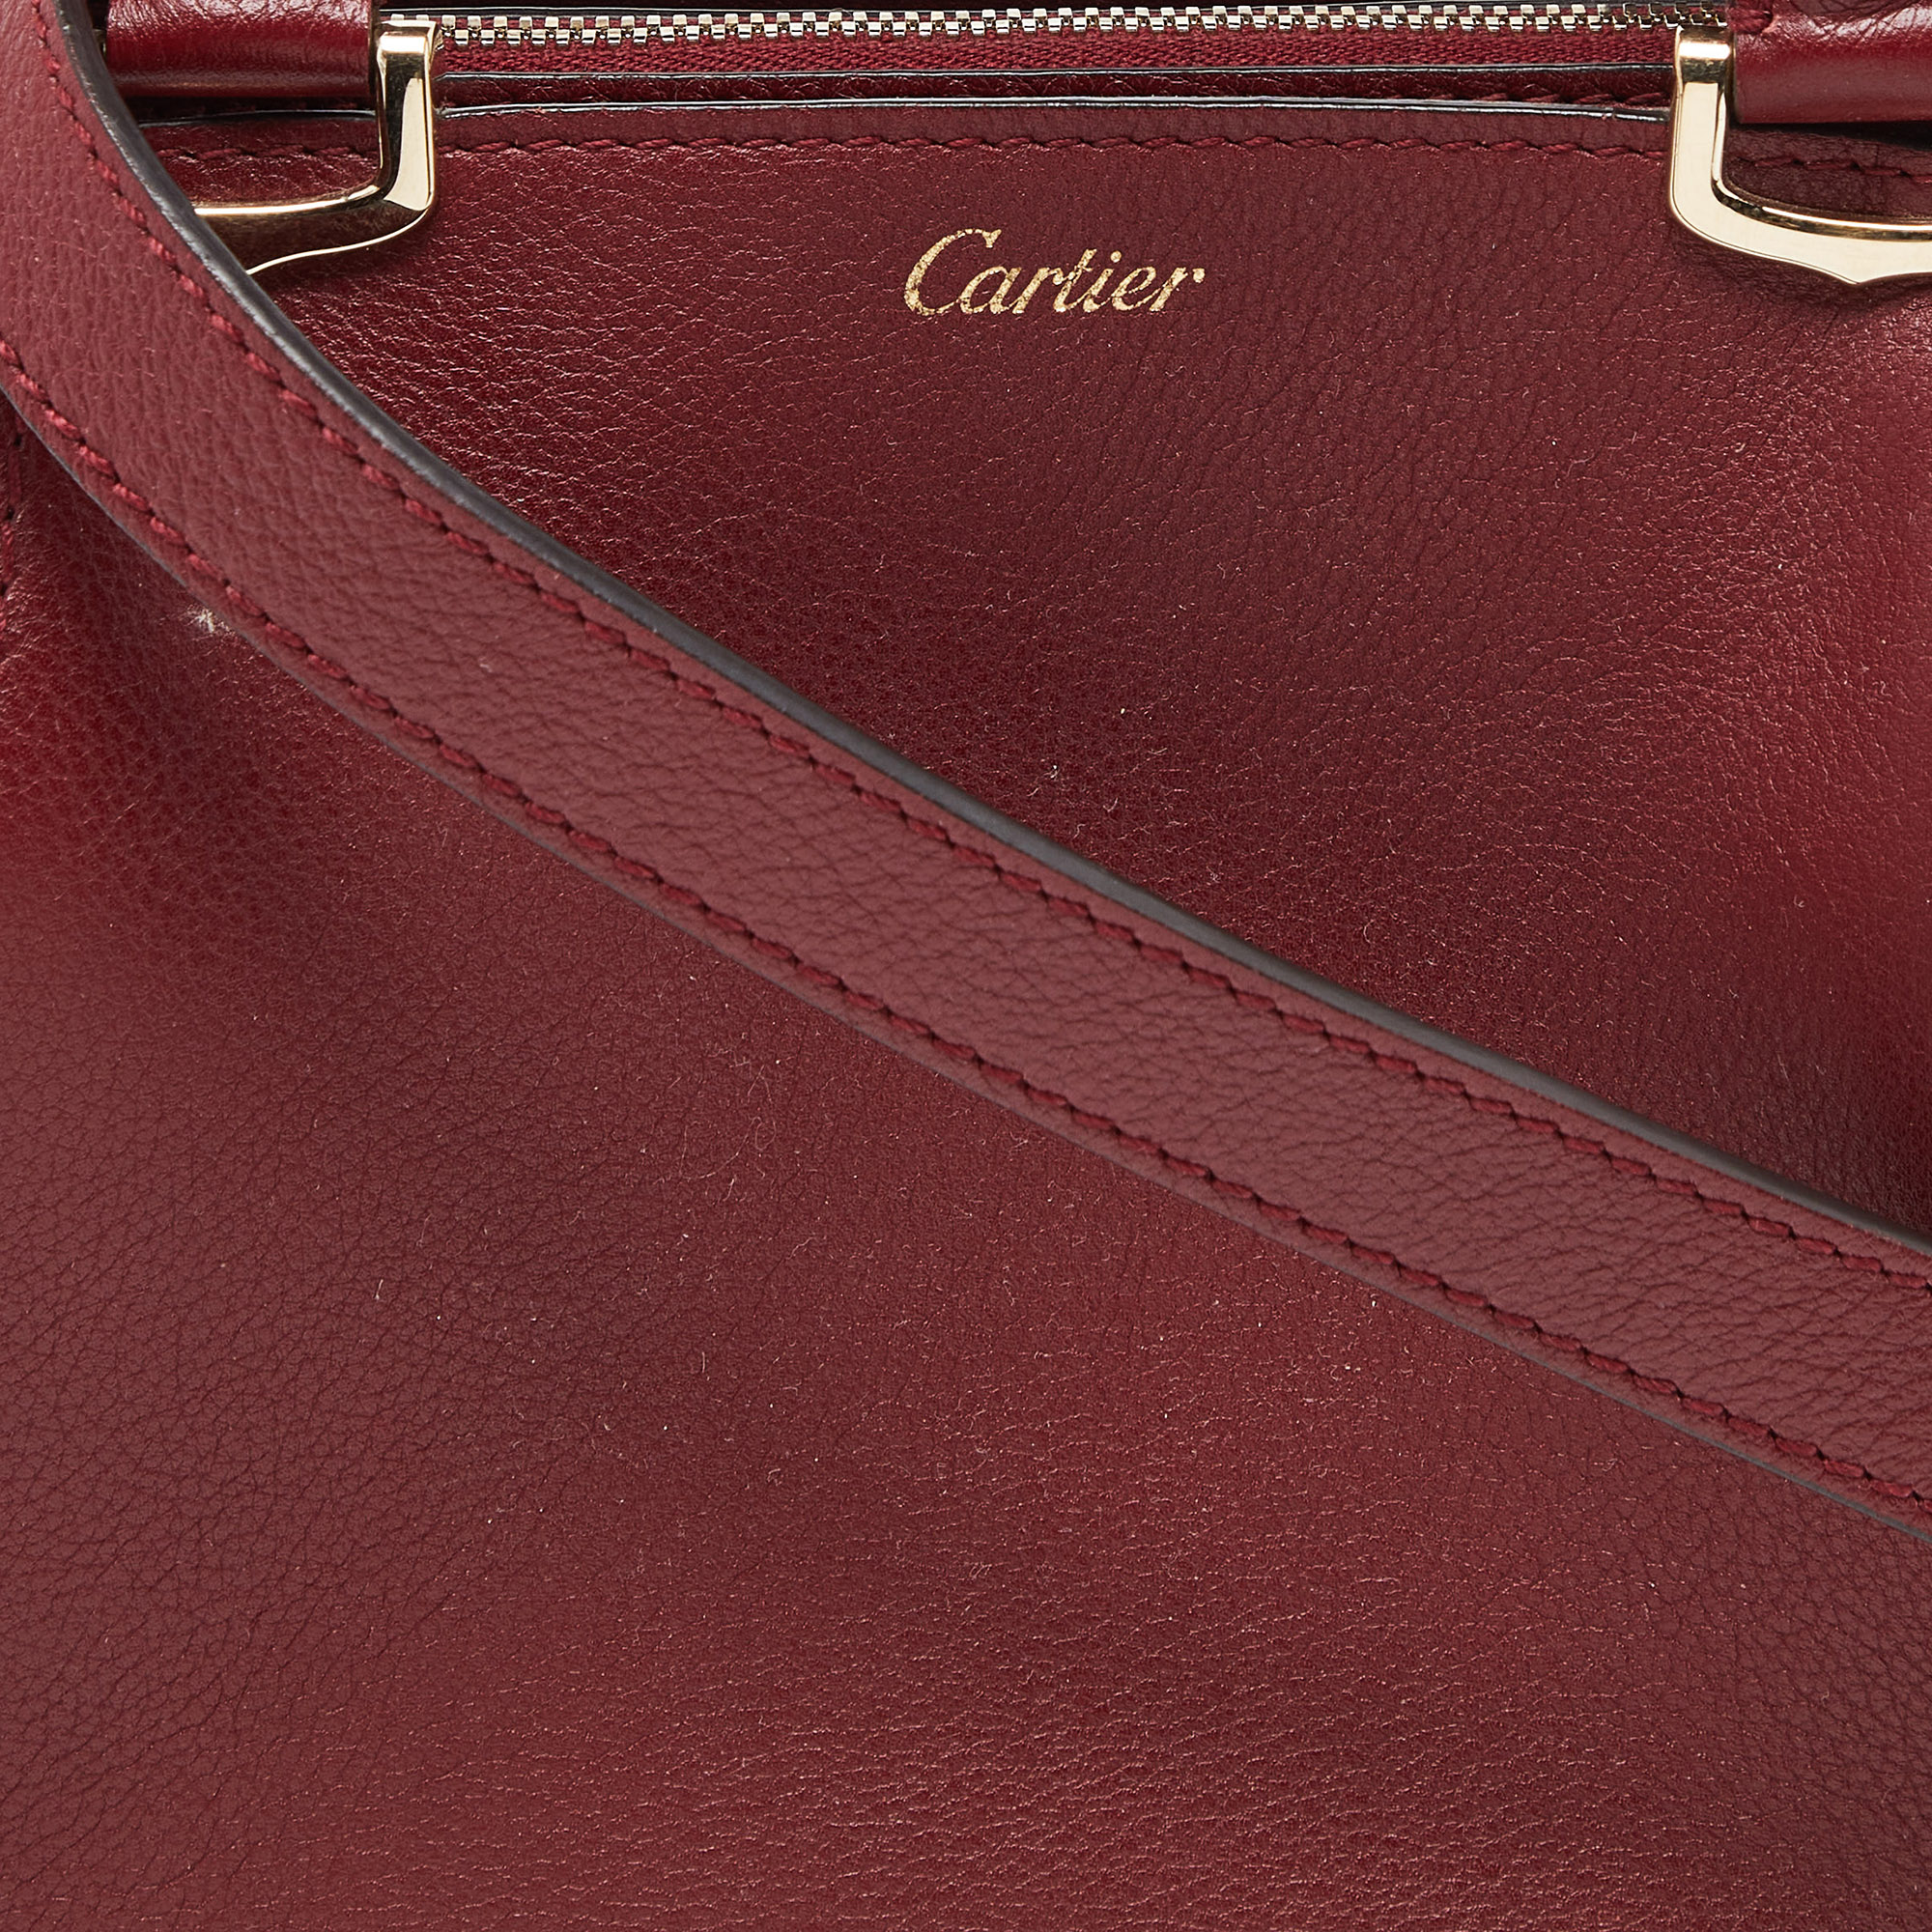 Cartier Red Leather Mini C De Cartier Satchel